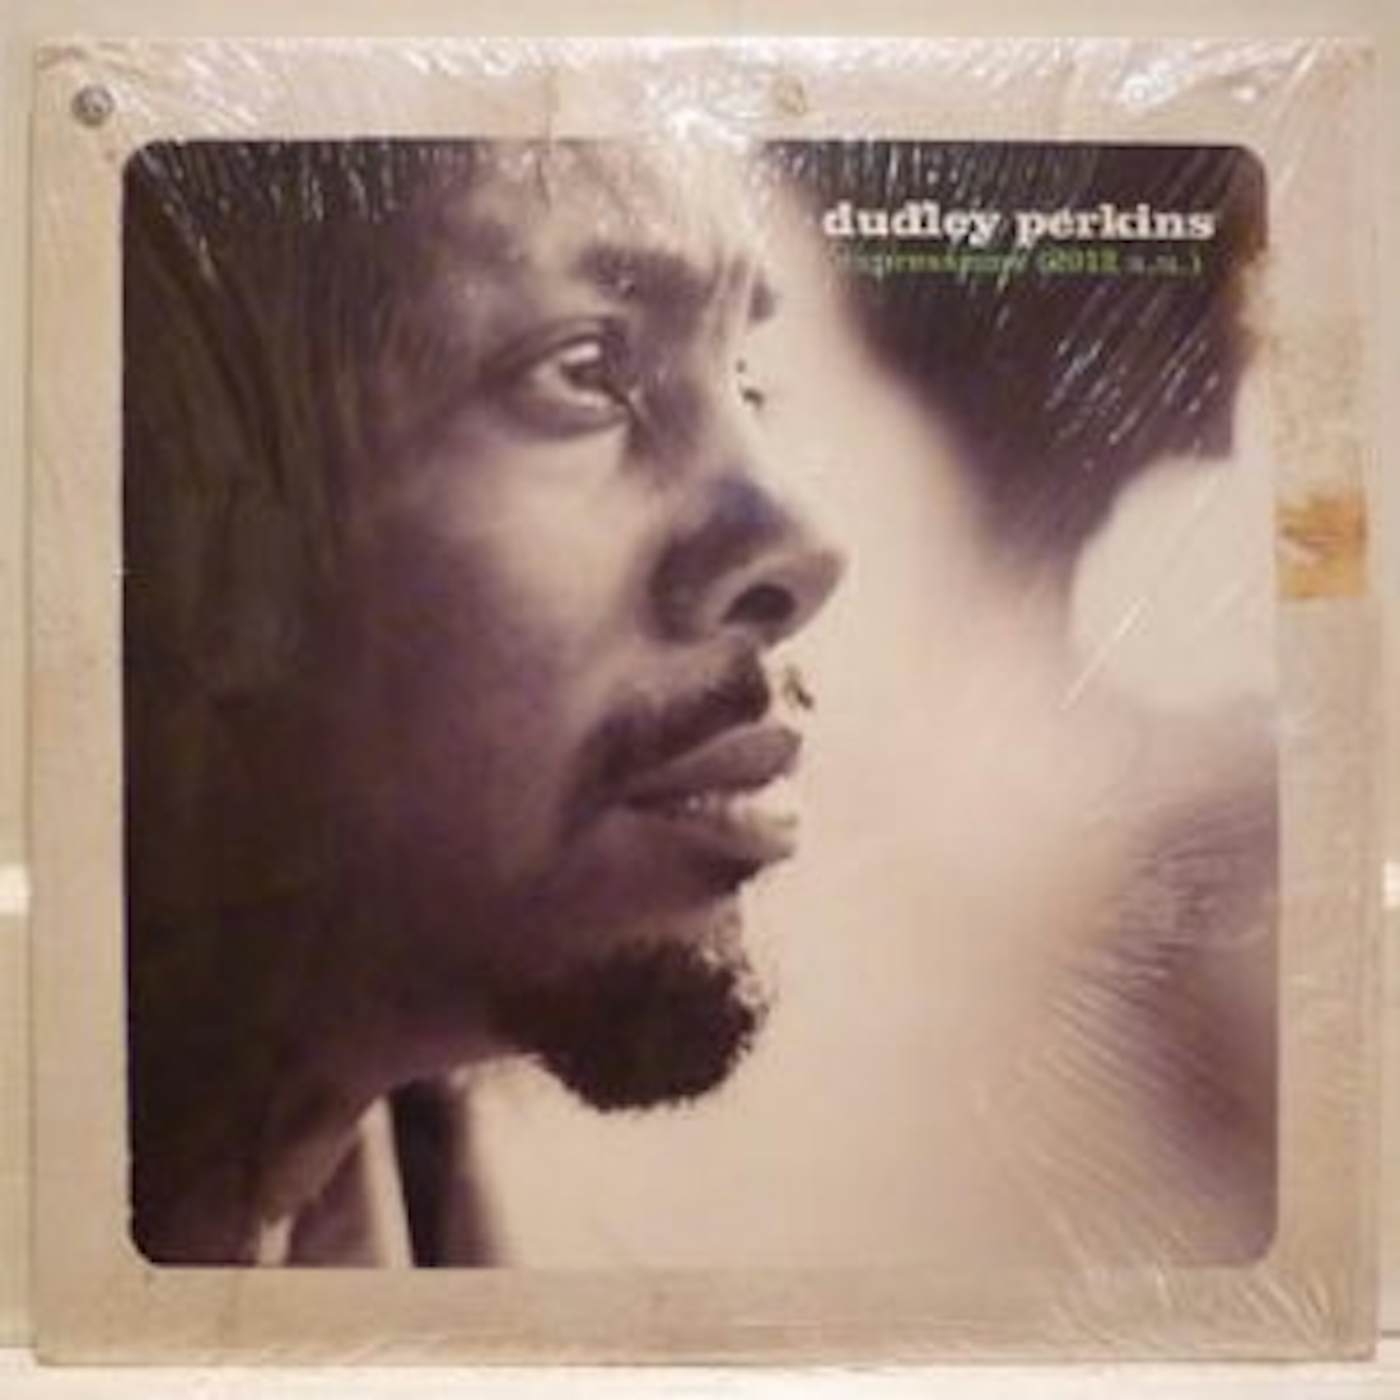 Dudley Perkins EXPRESSIONS Vinyl Record